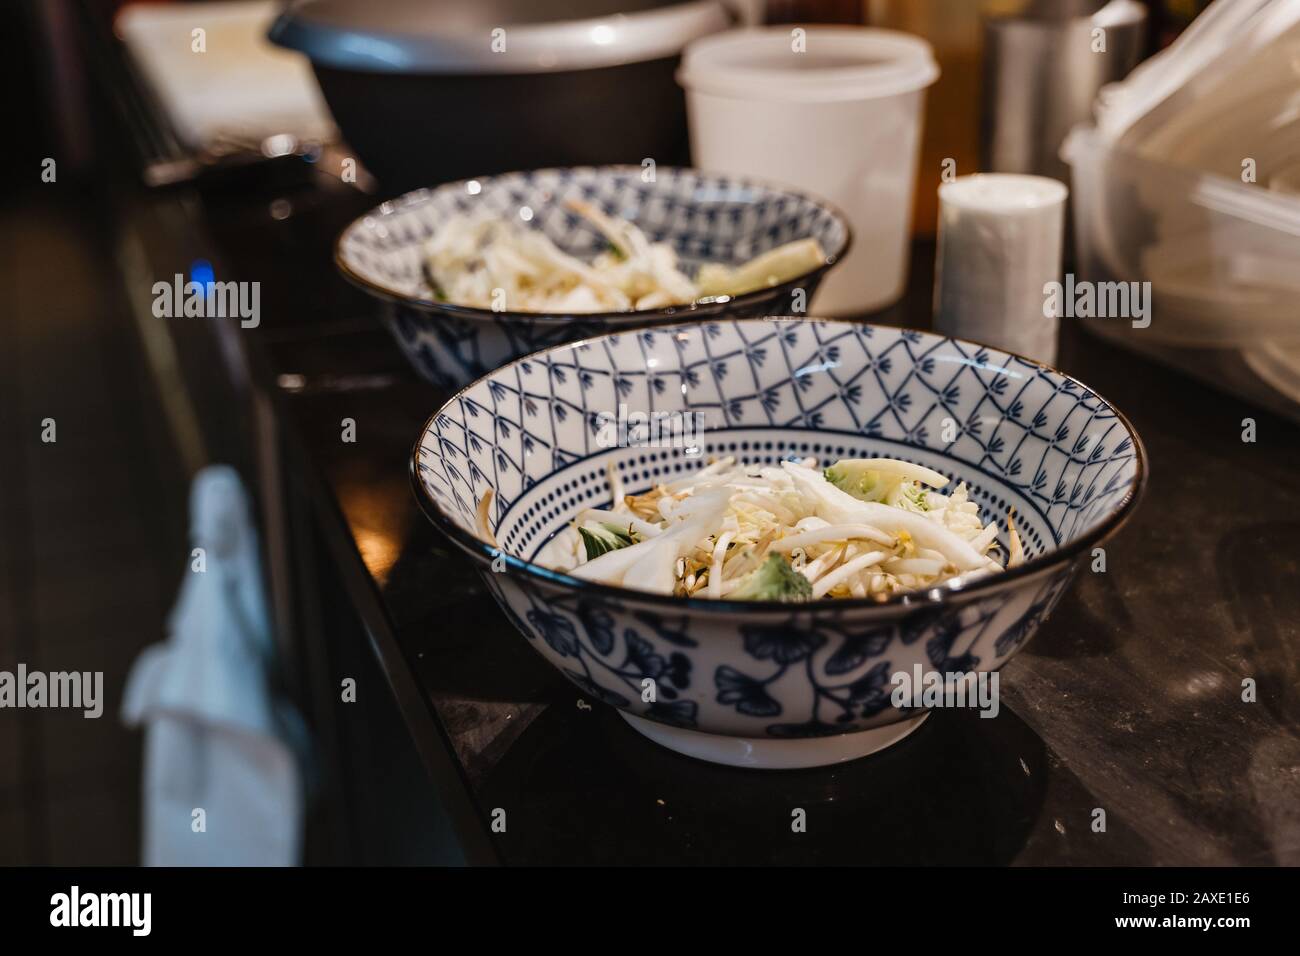 Vista di messa a fuoco selezionata, preparazione di noodle di riso, germoglio di fagioli e verdure in ciotole con motivo blu cinese, sul banco alla cucina del ristorante. Foto Stock